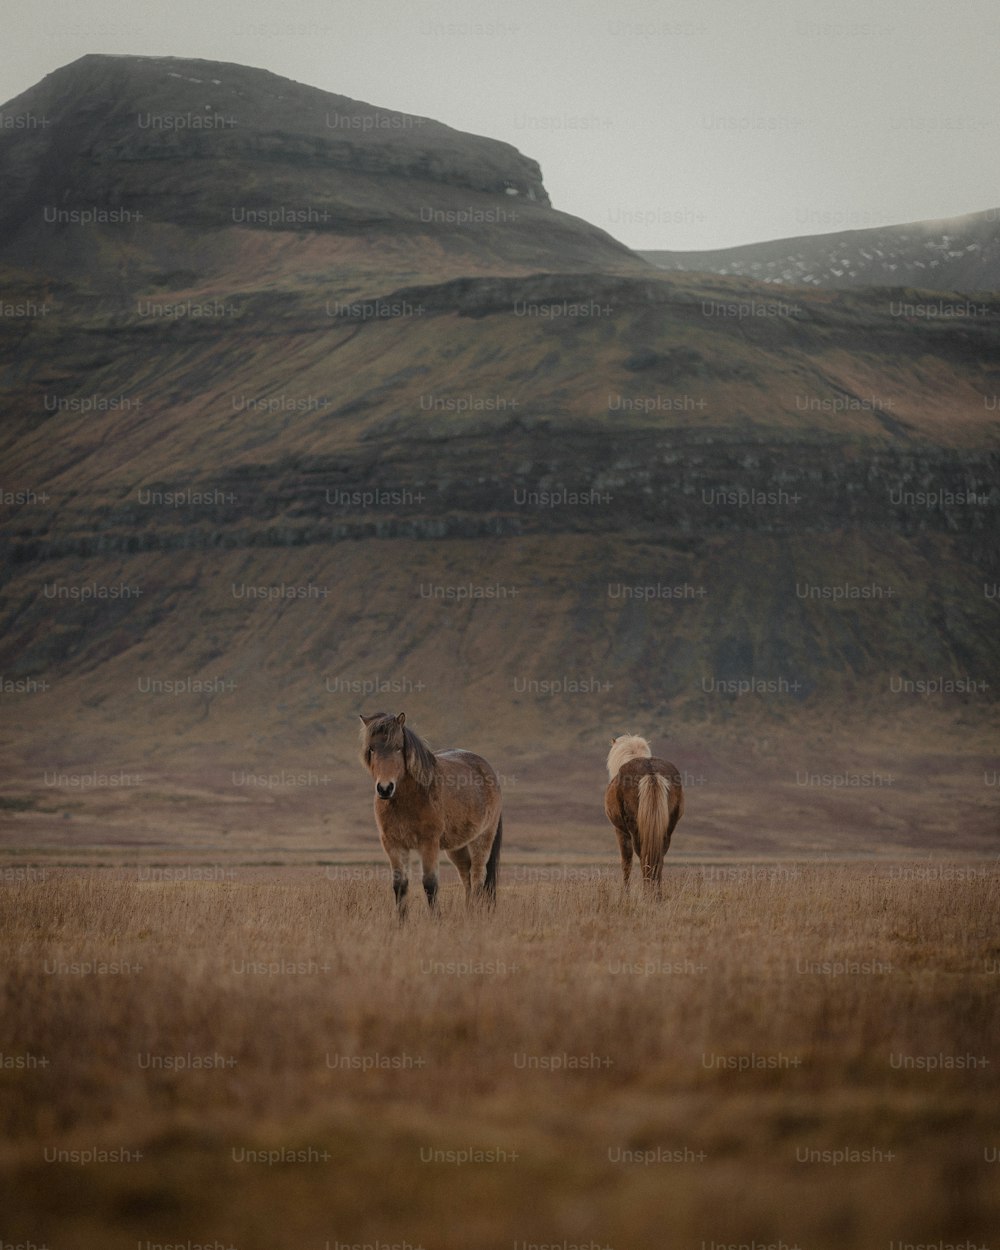 Ein paar Pferde, die auf einem trockenen Grasfeld stehen